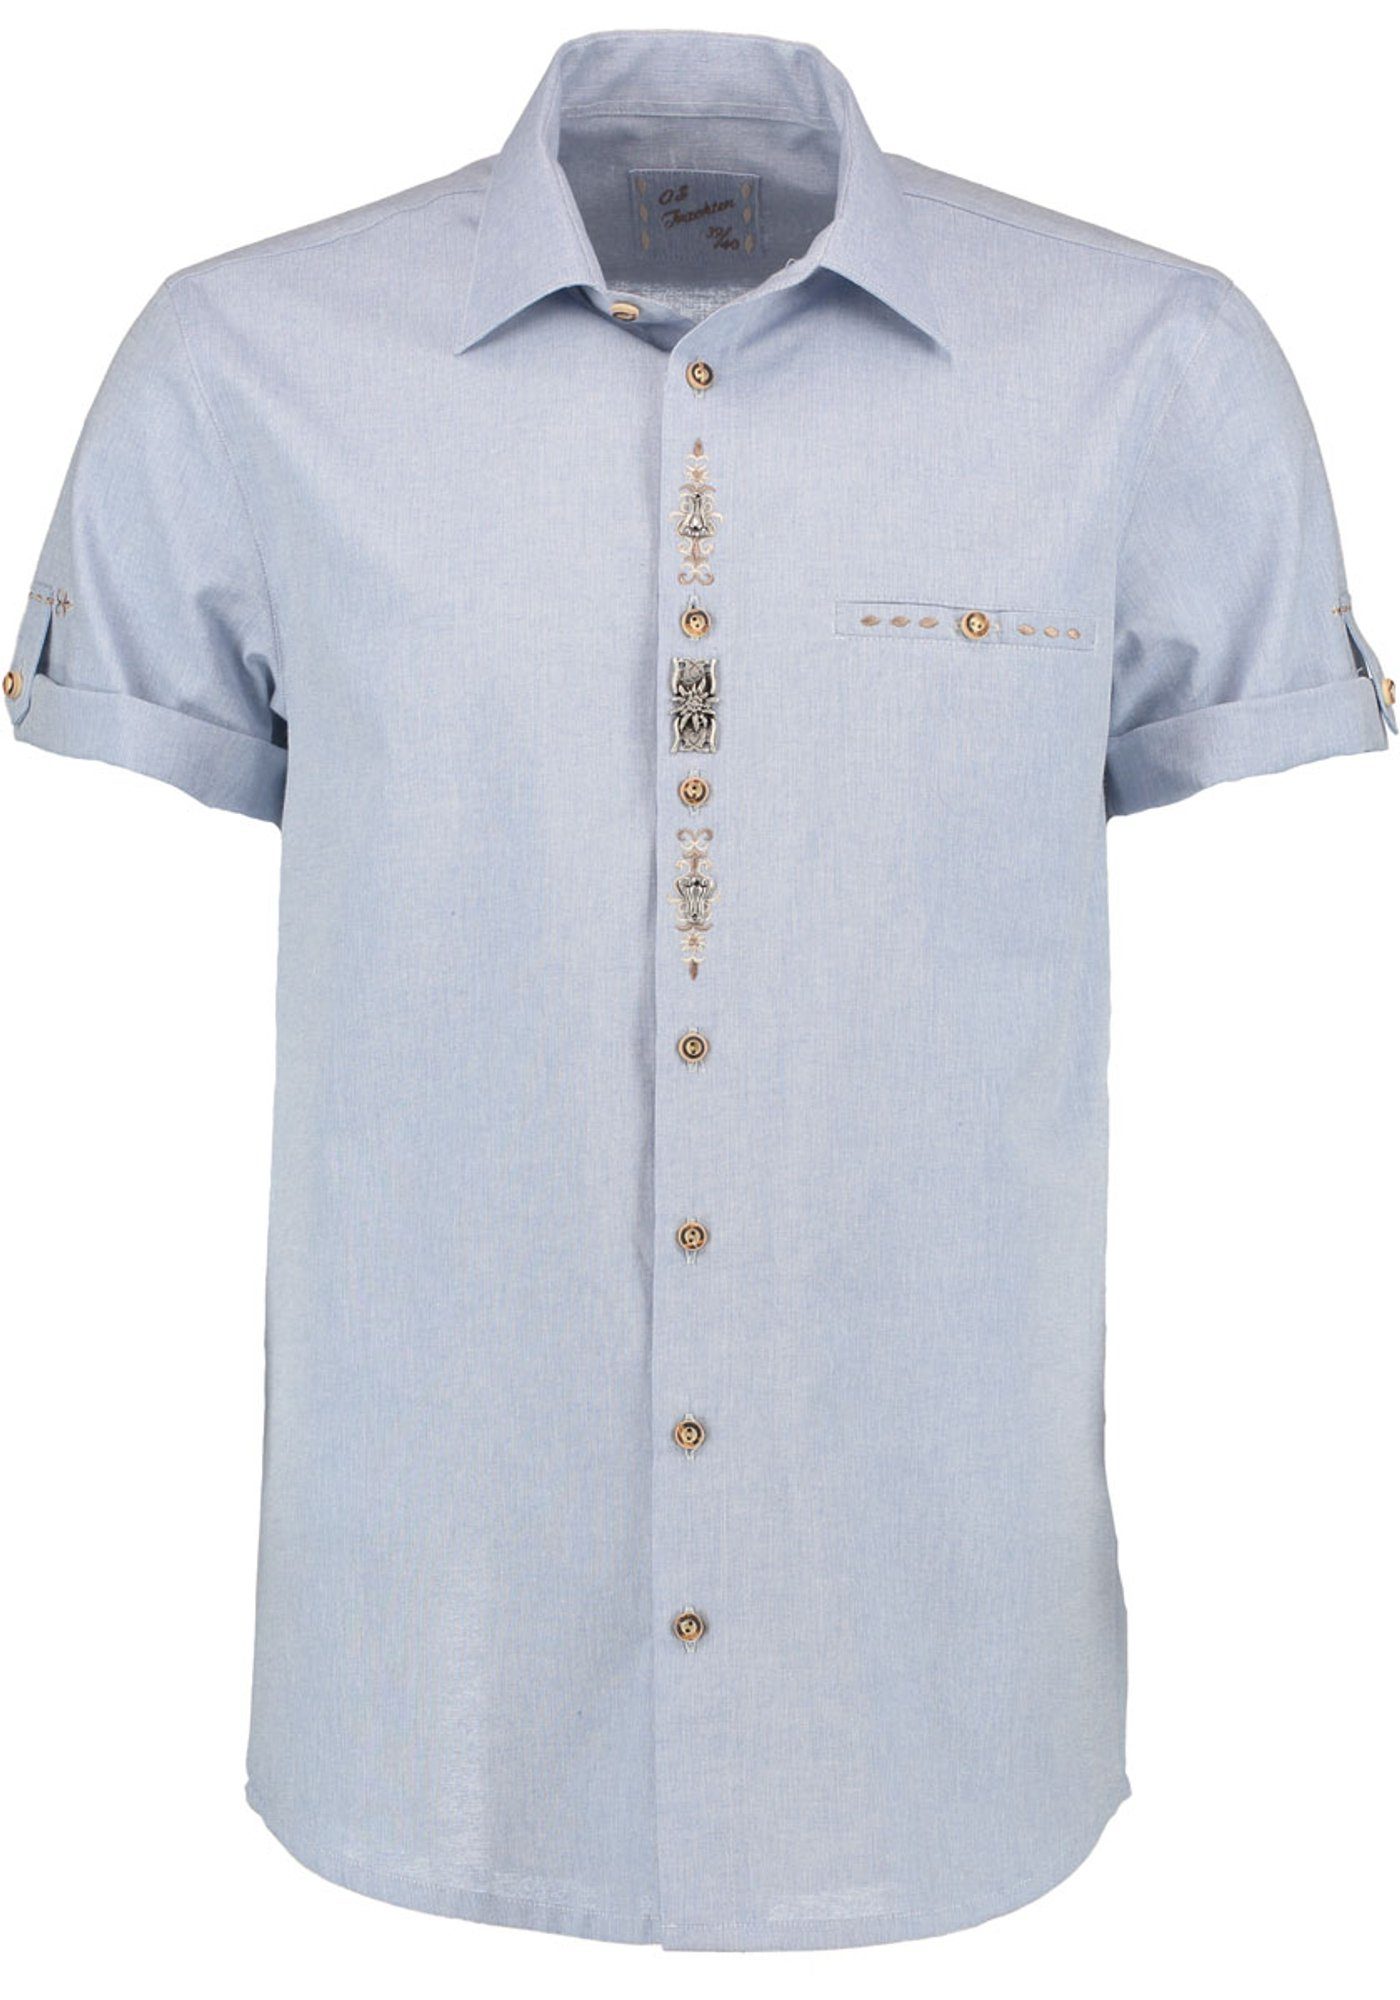 OS-Trachten Trachtenhemd Flino Kurzarmhemd mit Edelweiß-Zierteil auf der Knopfleiste